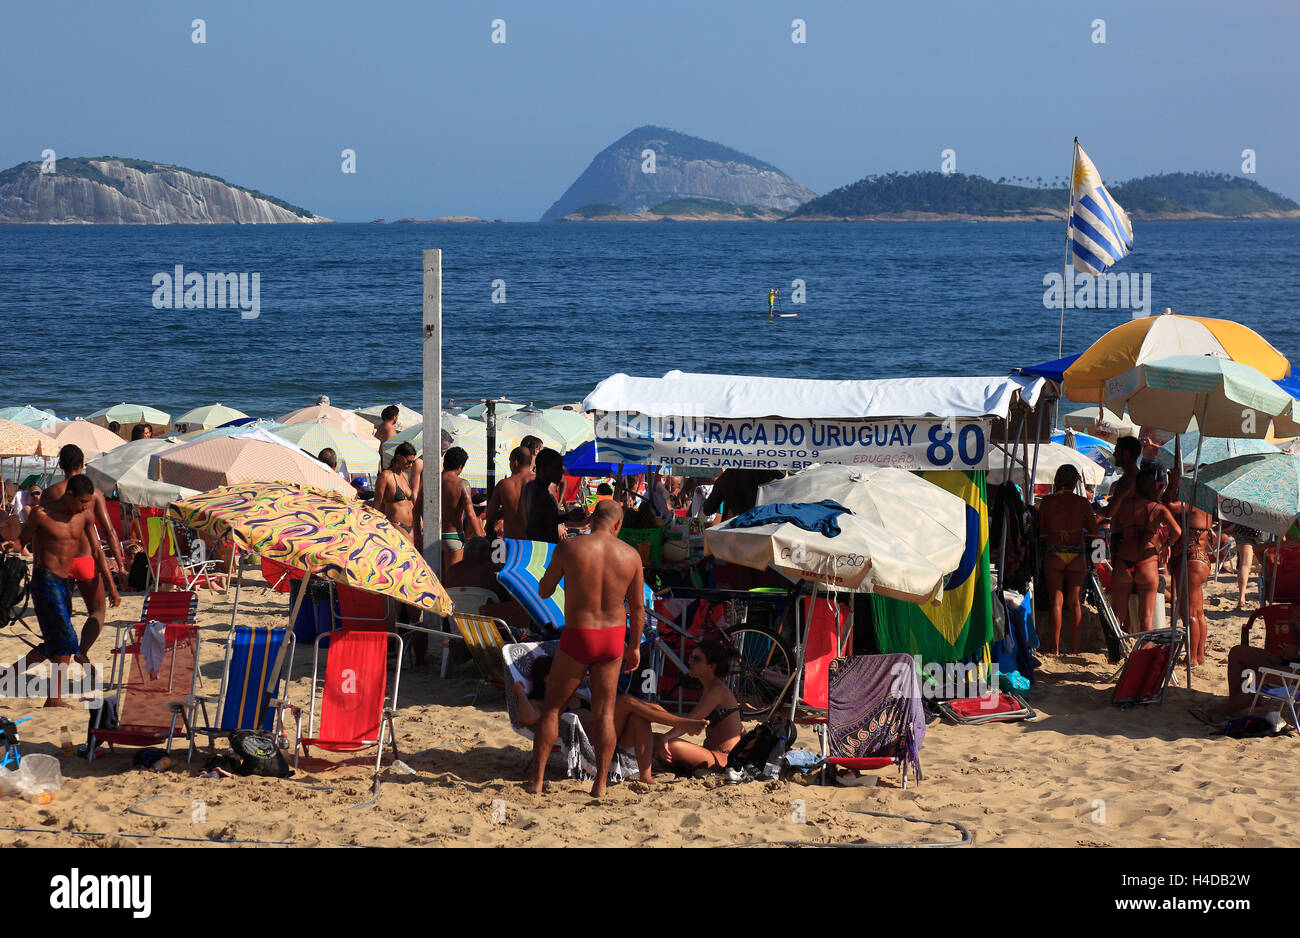 Copacobana beach in Rio de Janeiro, Brazil Stock Photo